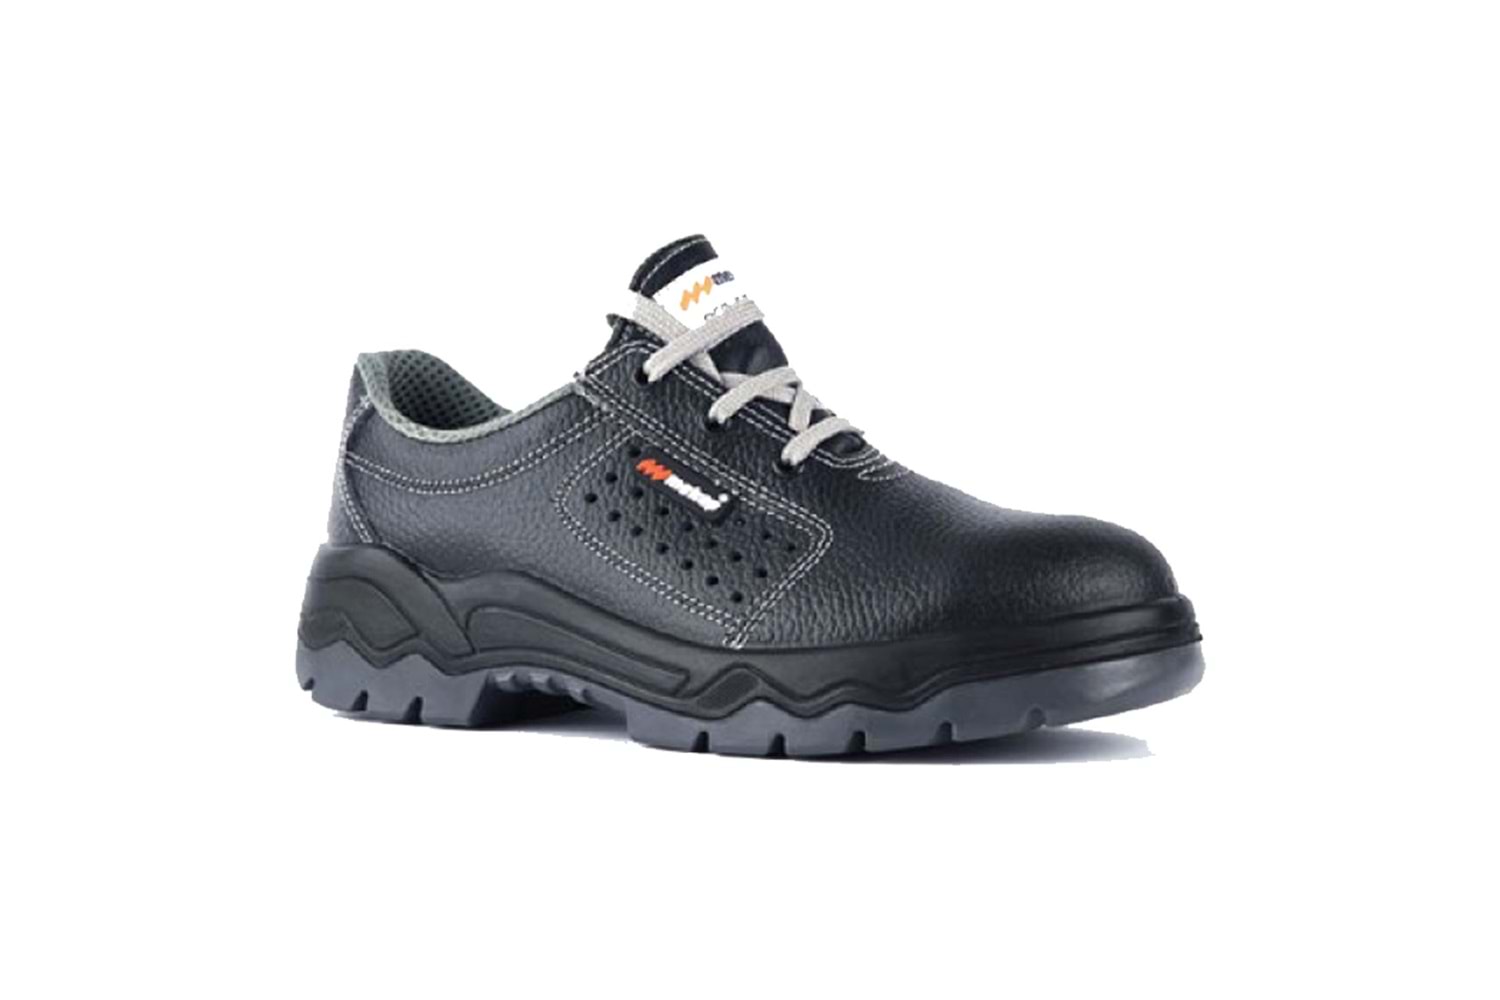 Mekap İş Ayakkabısı - 0.30 R S1 Eco Çelikli Deri Yazlık Ayakkabı - 40